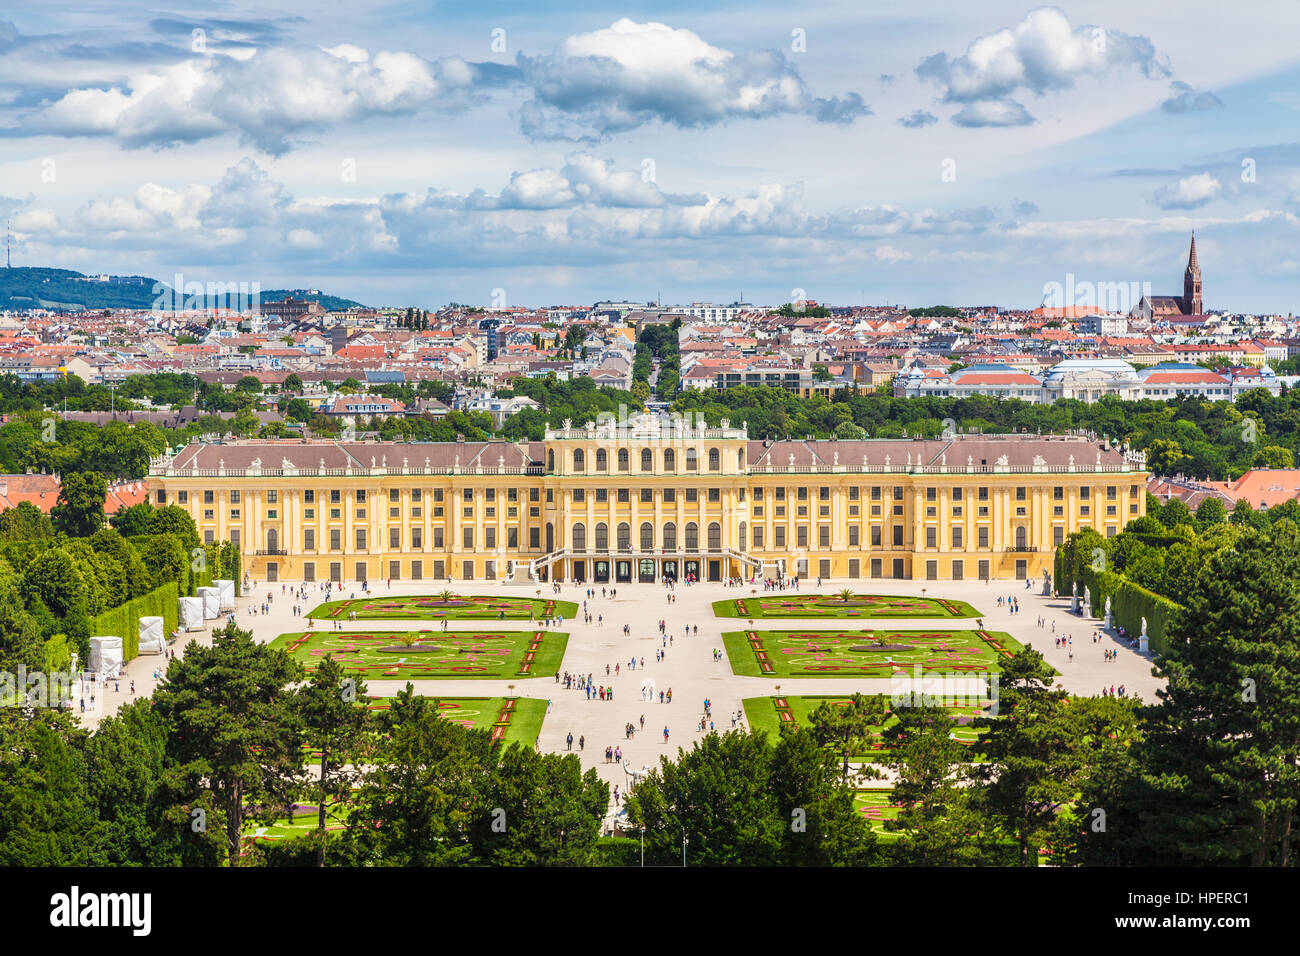 La vue classique du célèbre Palais Schönbrunn avec beaucoup de parterres sur une belle journée ensoleillée avec ciel bleu et nuages en été, Vienne, Autriche Banque D'Images